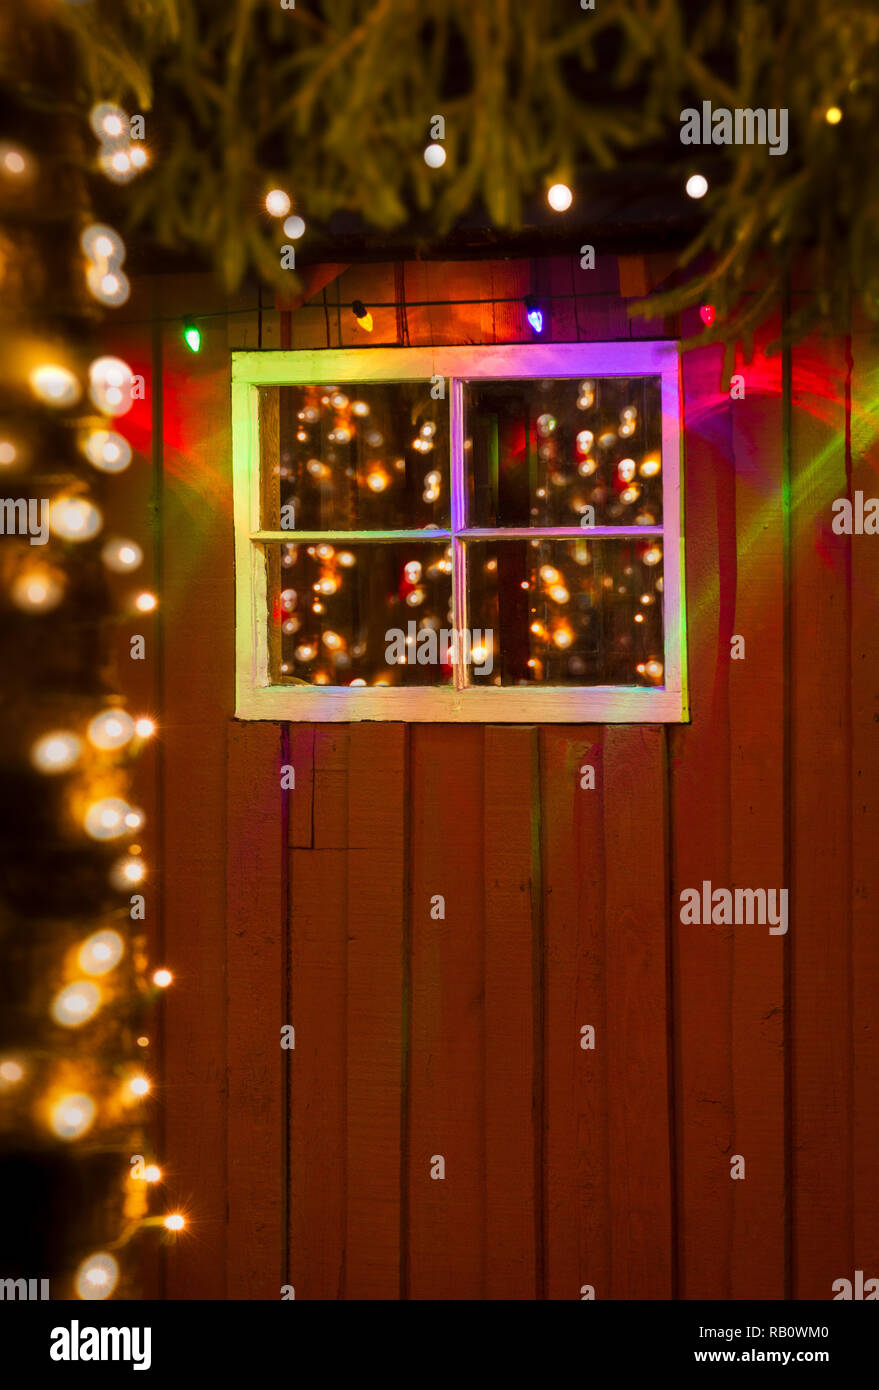 Coloratissima favola di Natale luci di notte si riflette in vetro antico dei riquadri della finestra rustico sul lato di un dipinto di rosso cabina di bosco. Foto Stock